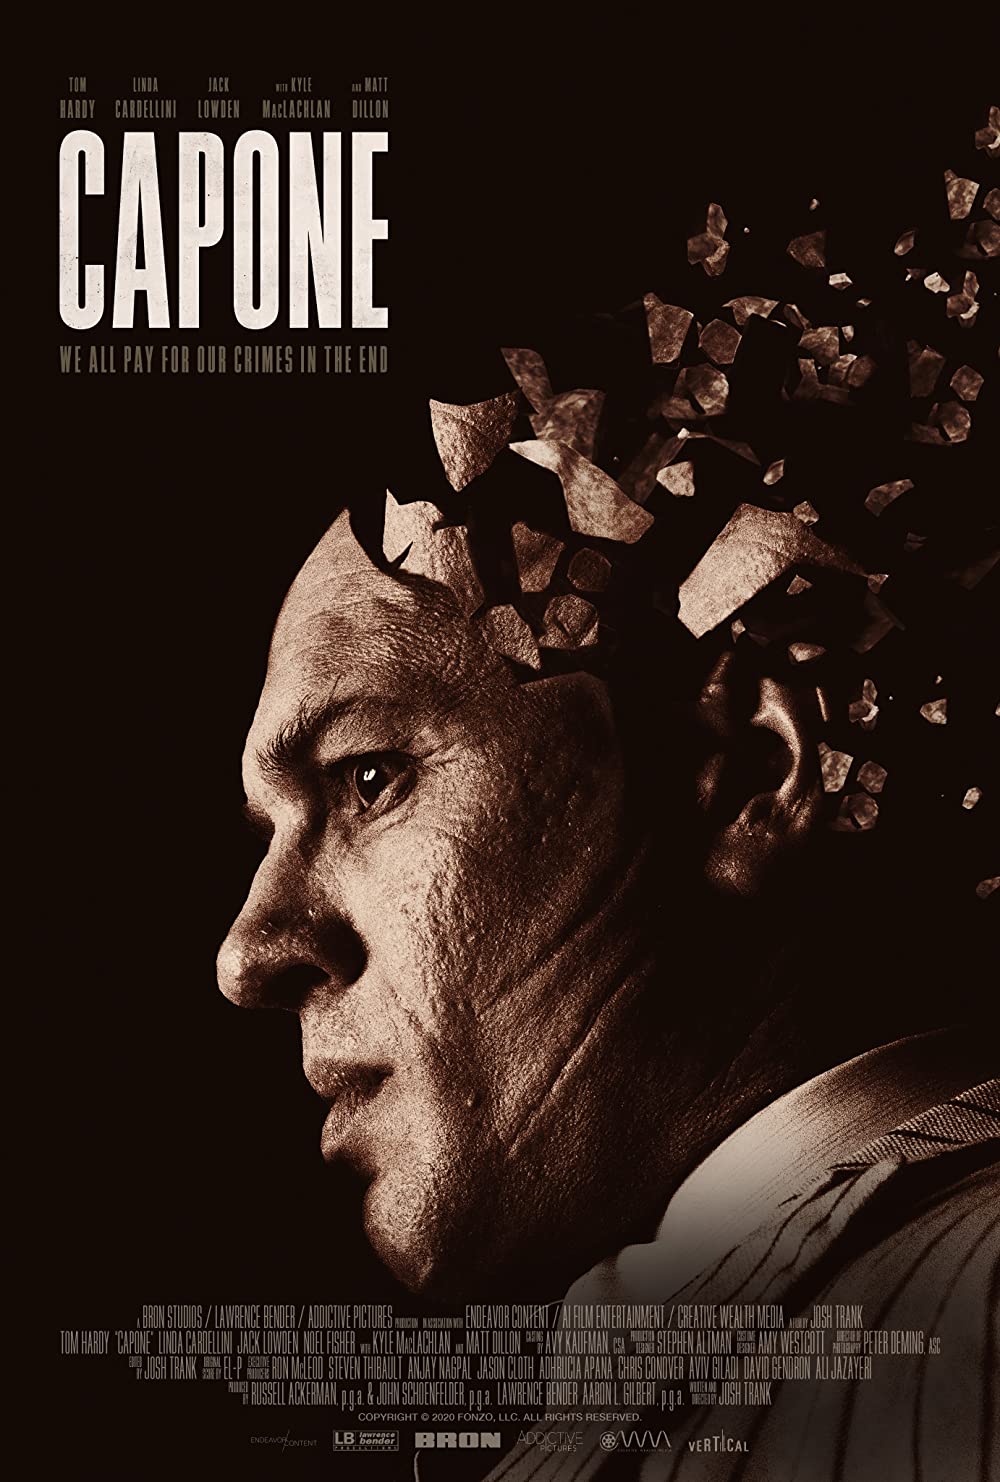 Filmbeschreibung zu Capone